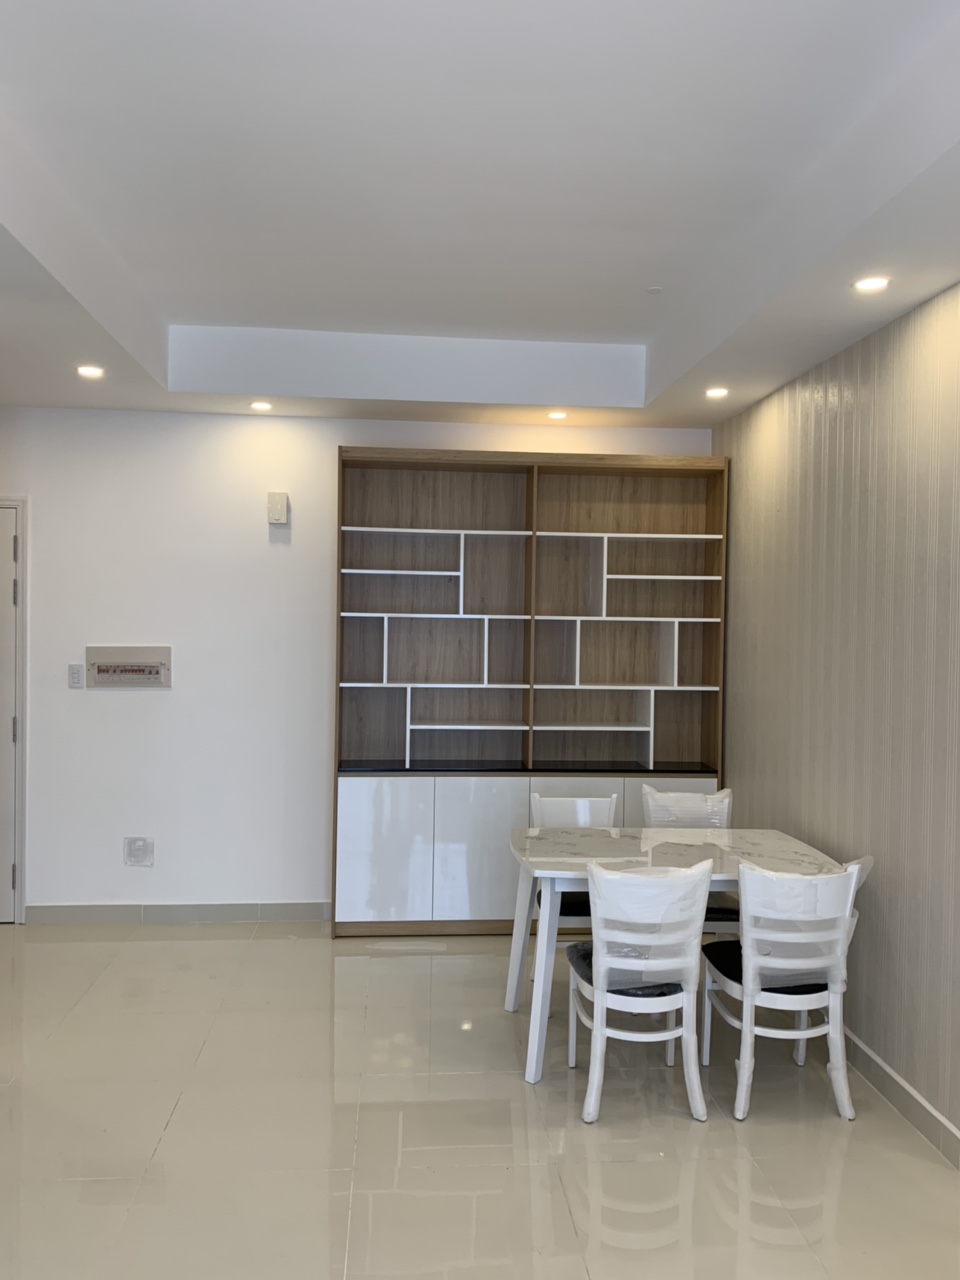 Cho thuê gấp căn hộ chung cư Florita 2 phòng ngủ giá rẻ - Khu Him Lam - Quận 7 